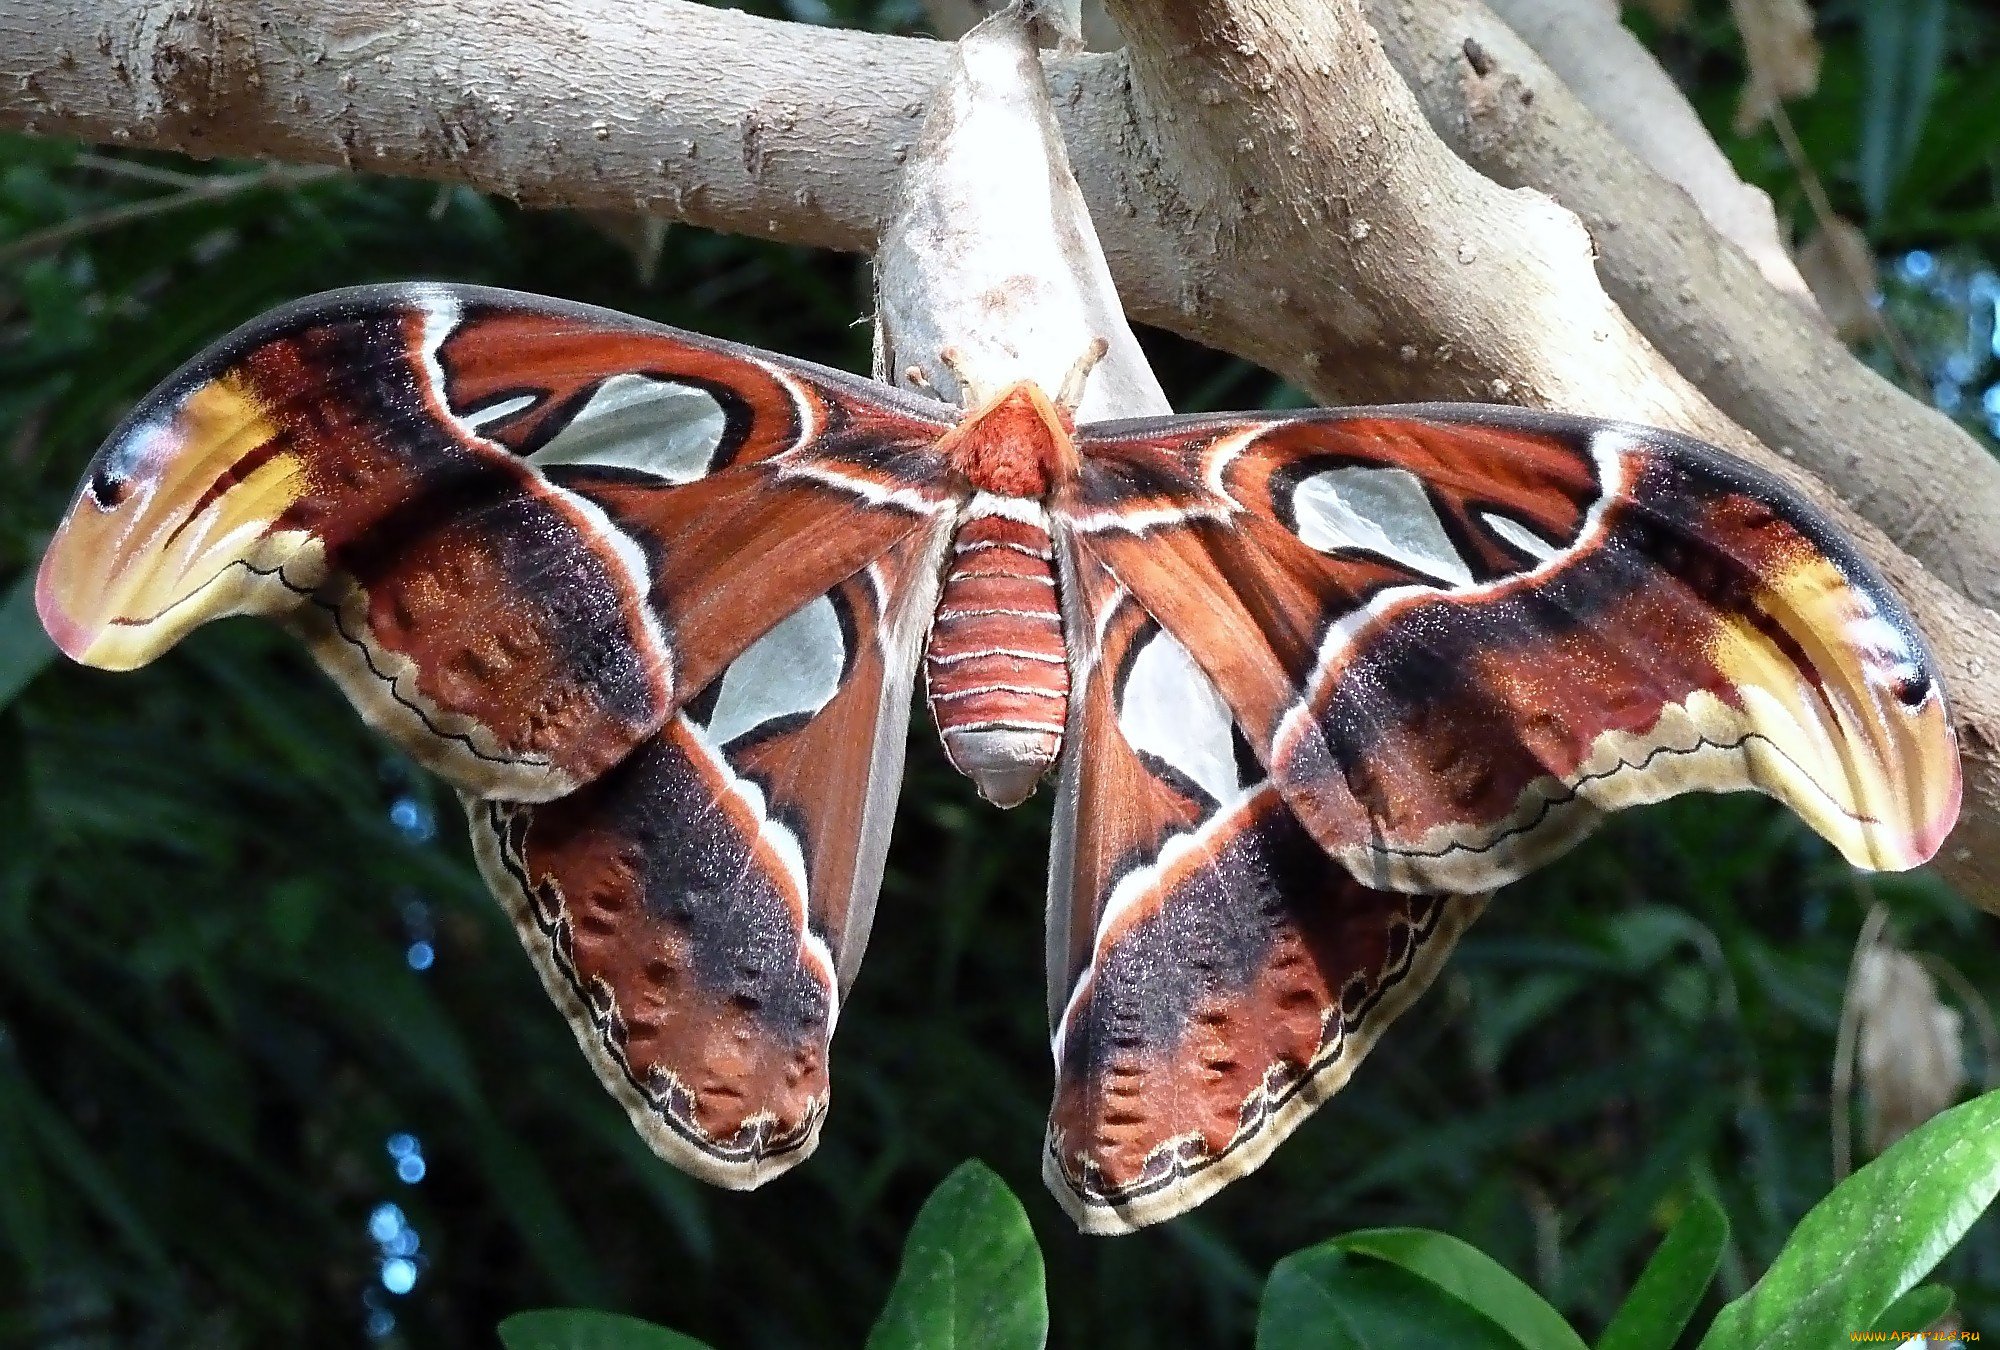 Самая красивая бабочка в мире фото название